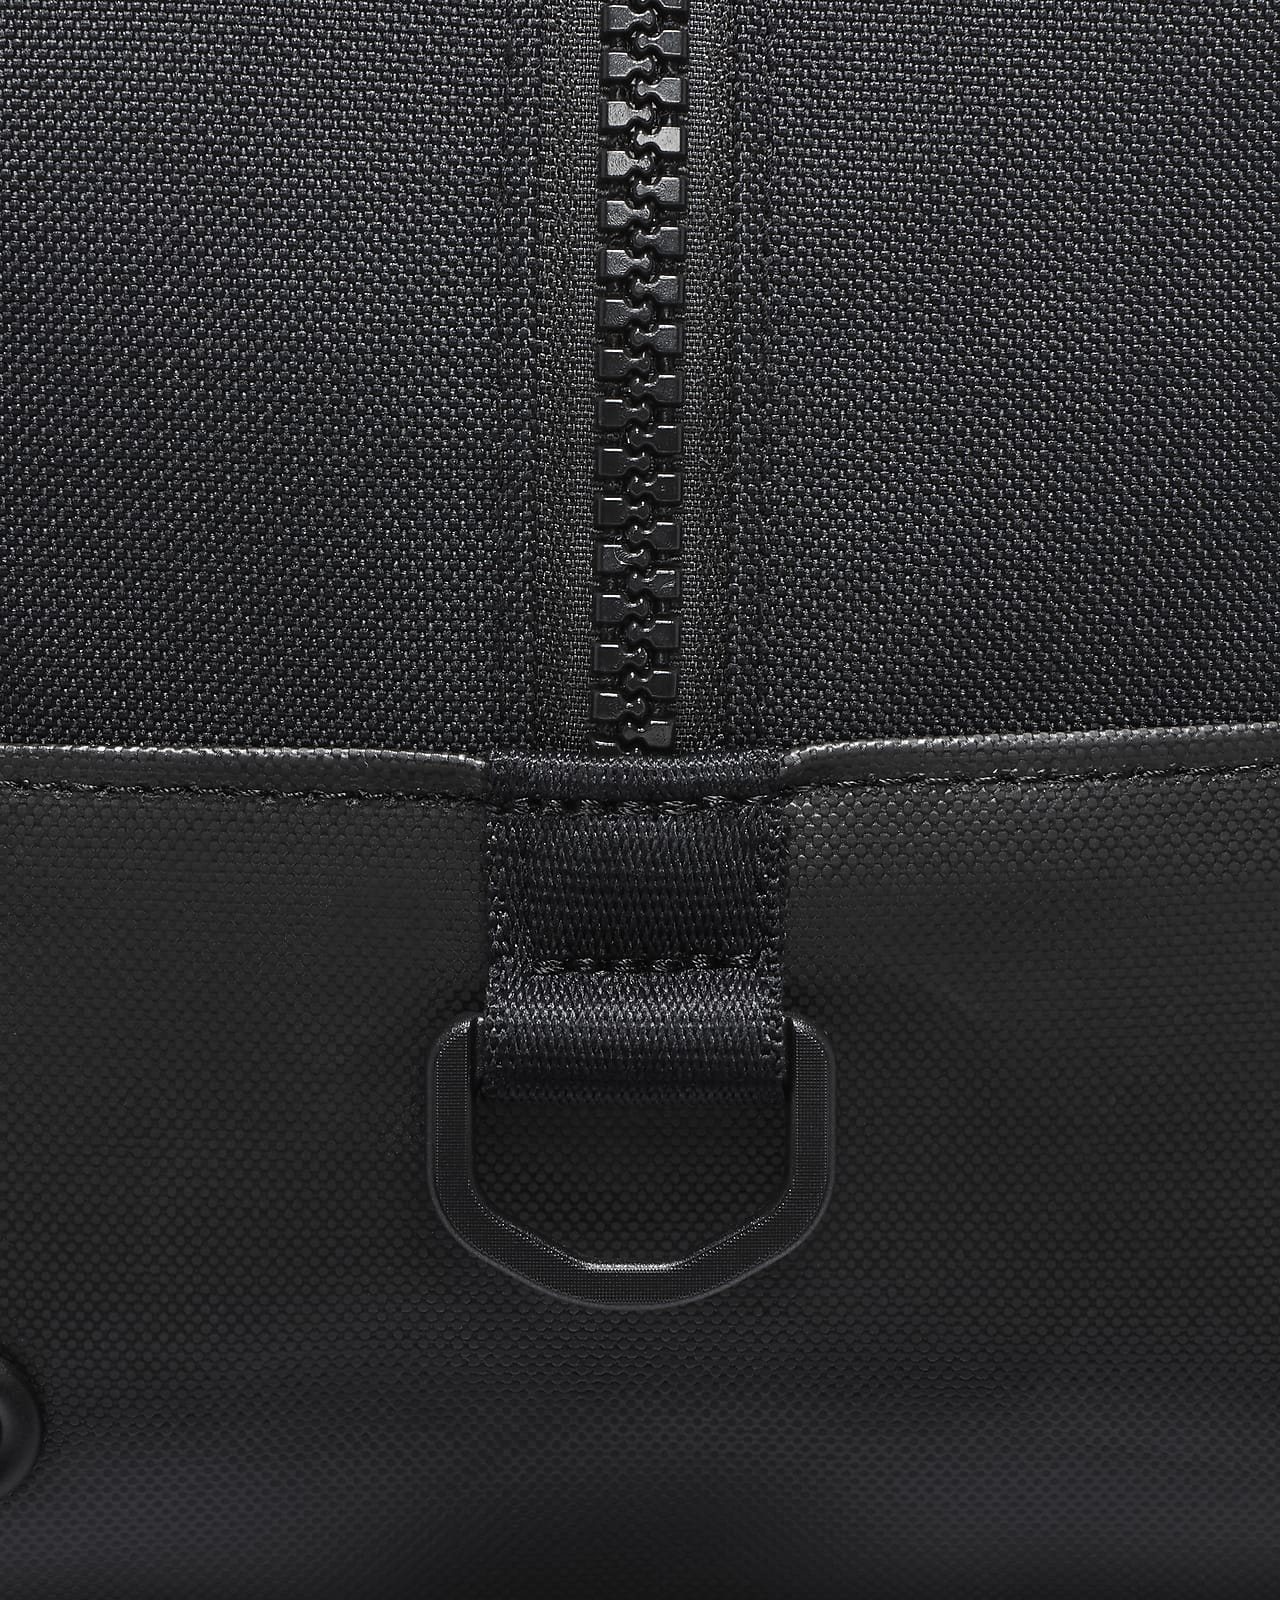 Nike kol çantası - Bayan Modelleri 'da - 1113774632